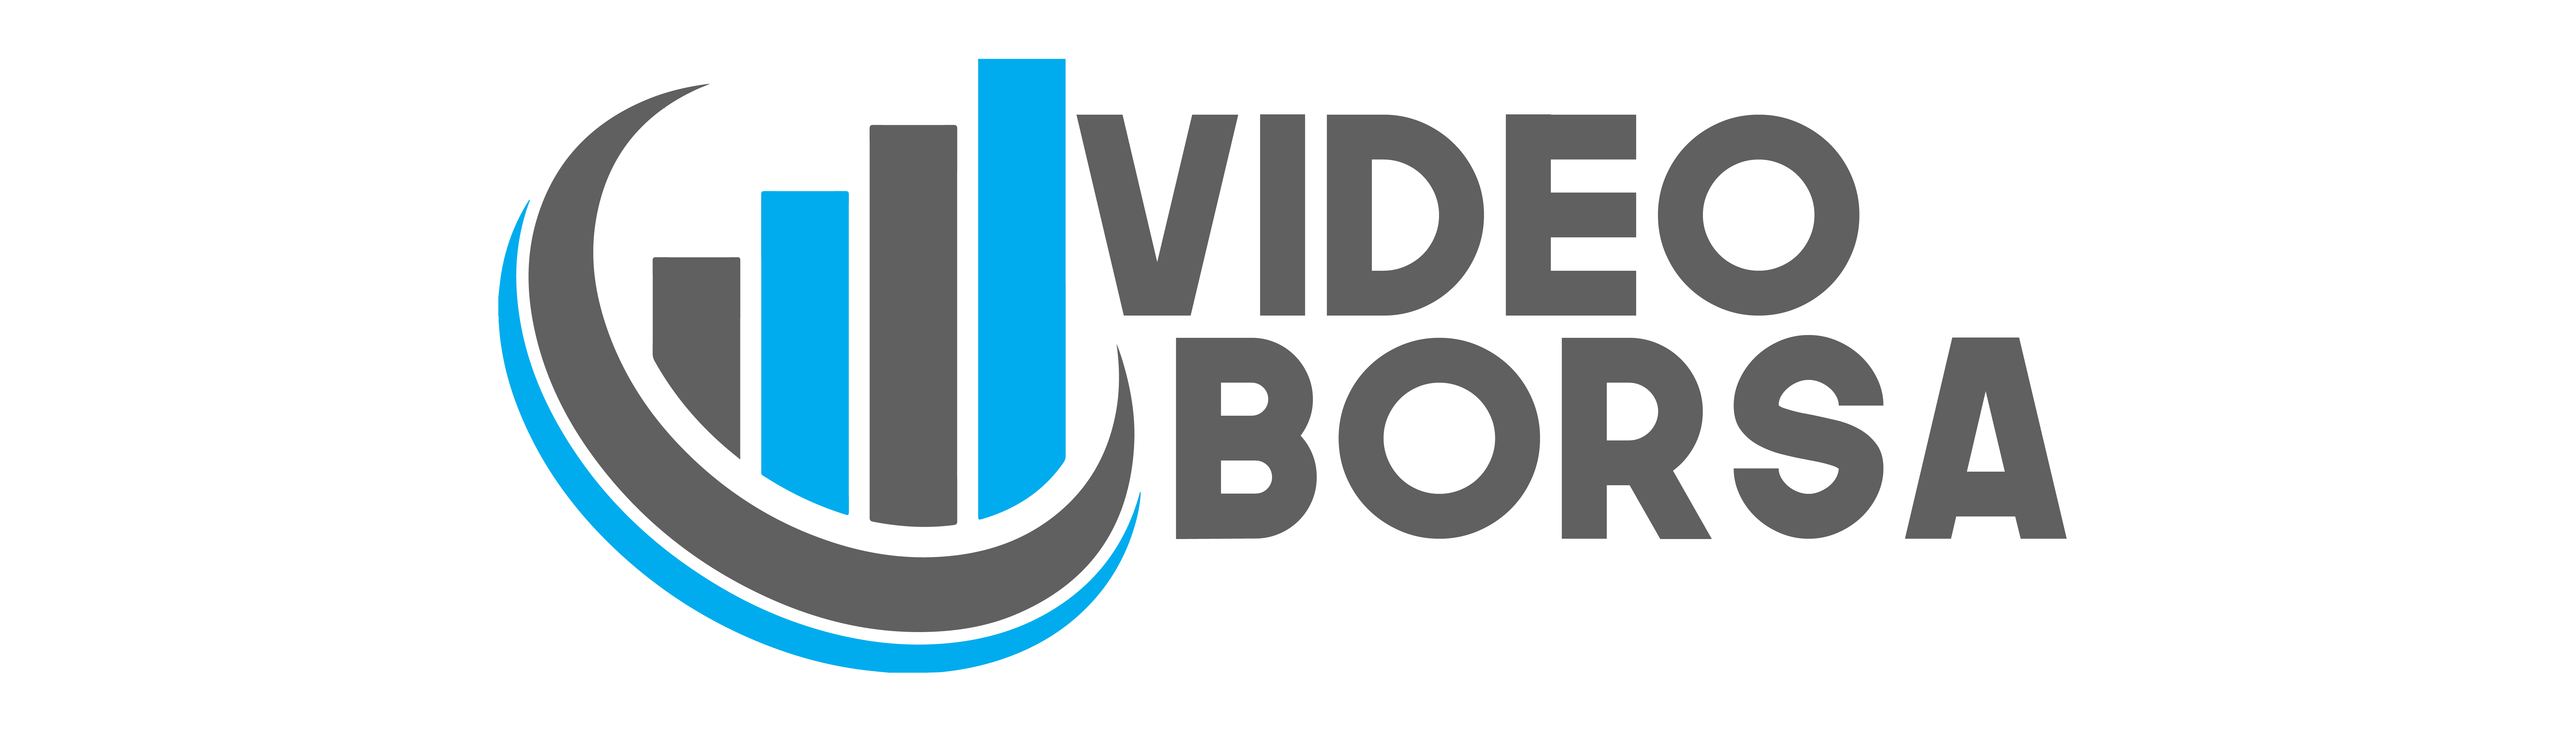 VideoBorsa